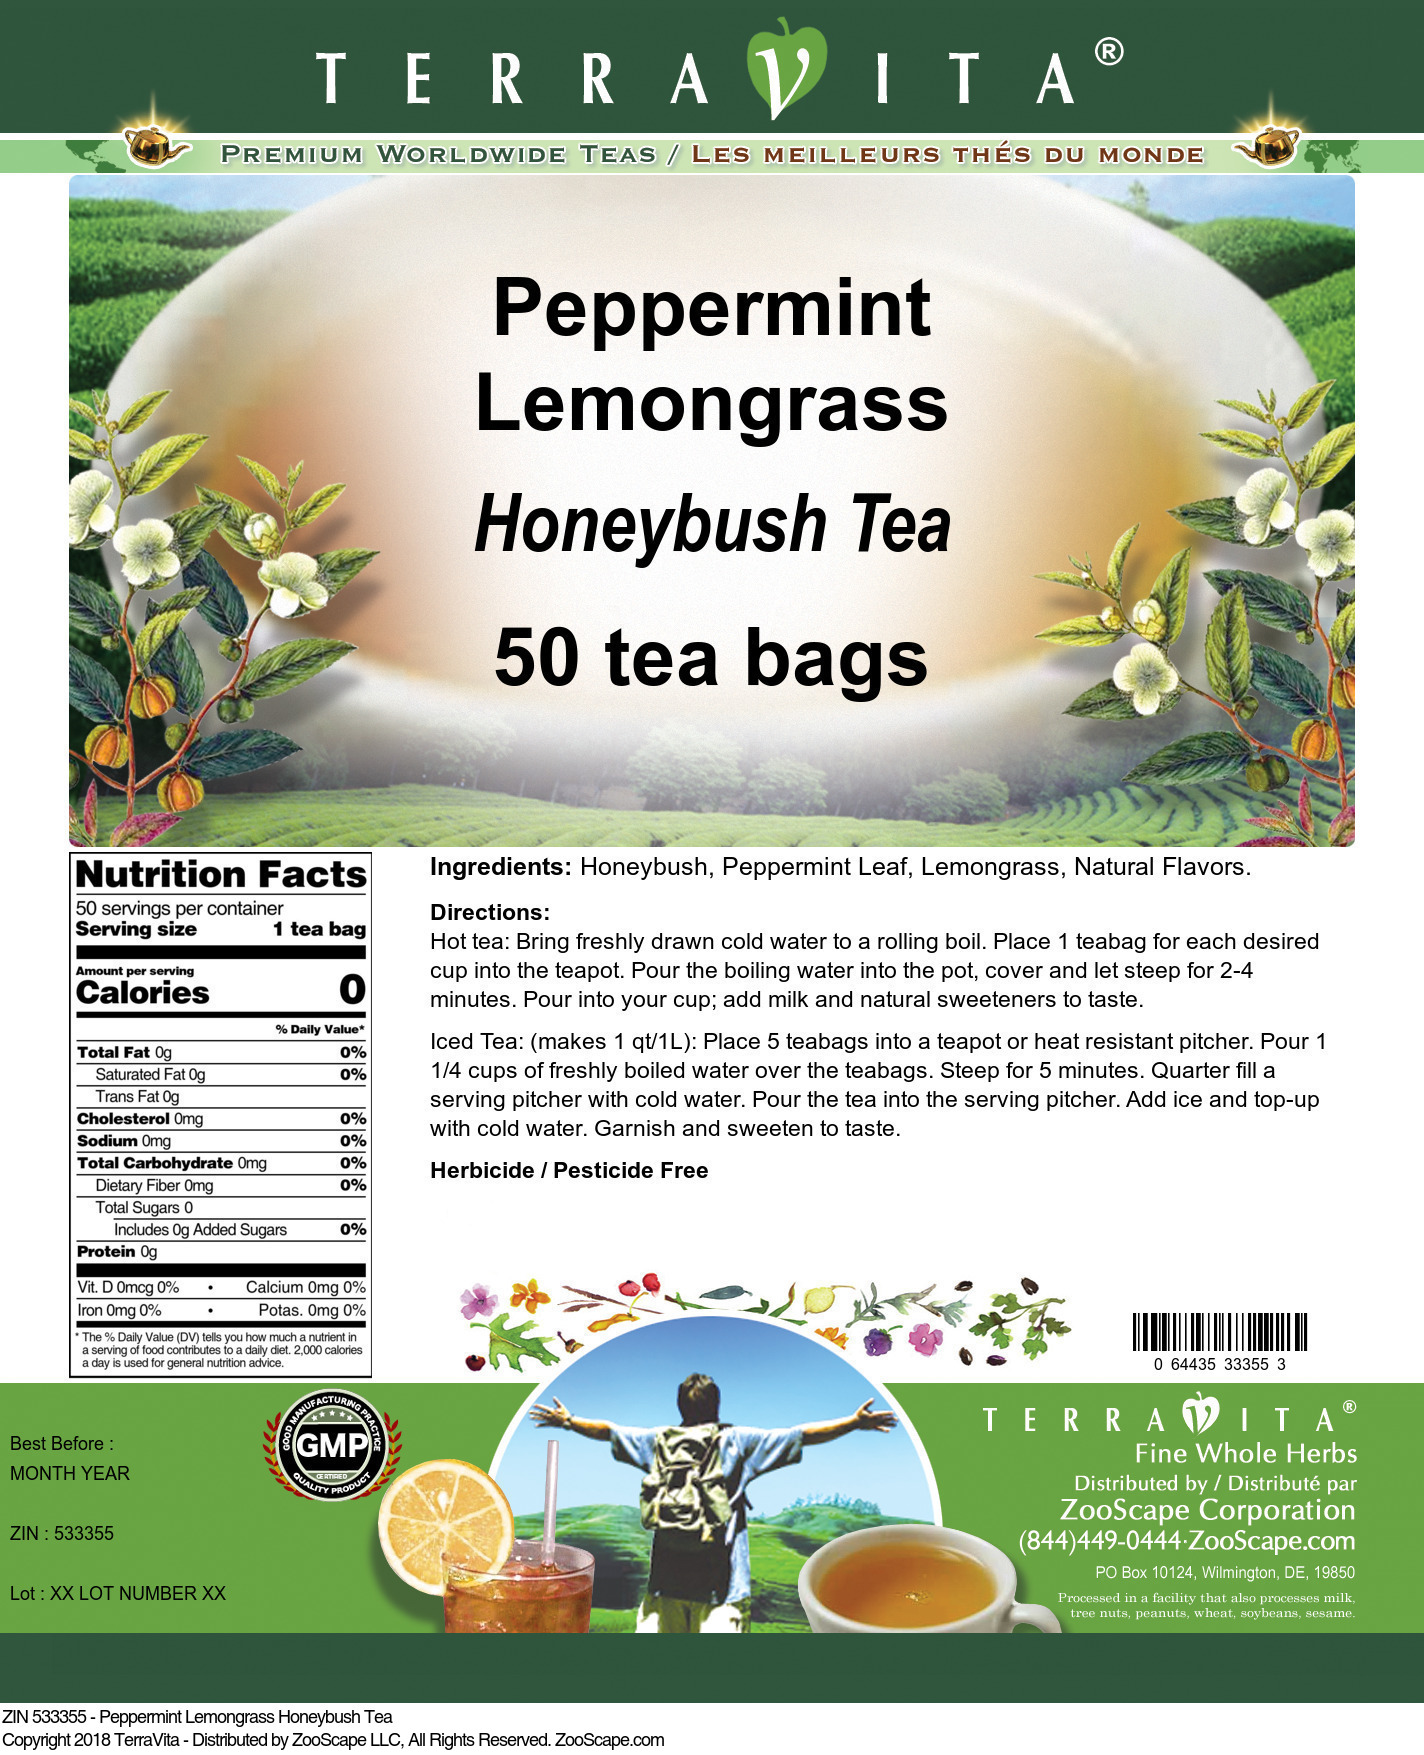 Peppermint Lemongrass Honeybush Tea - Label